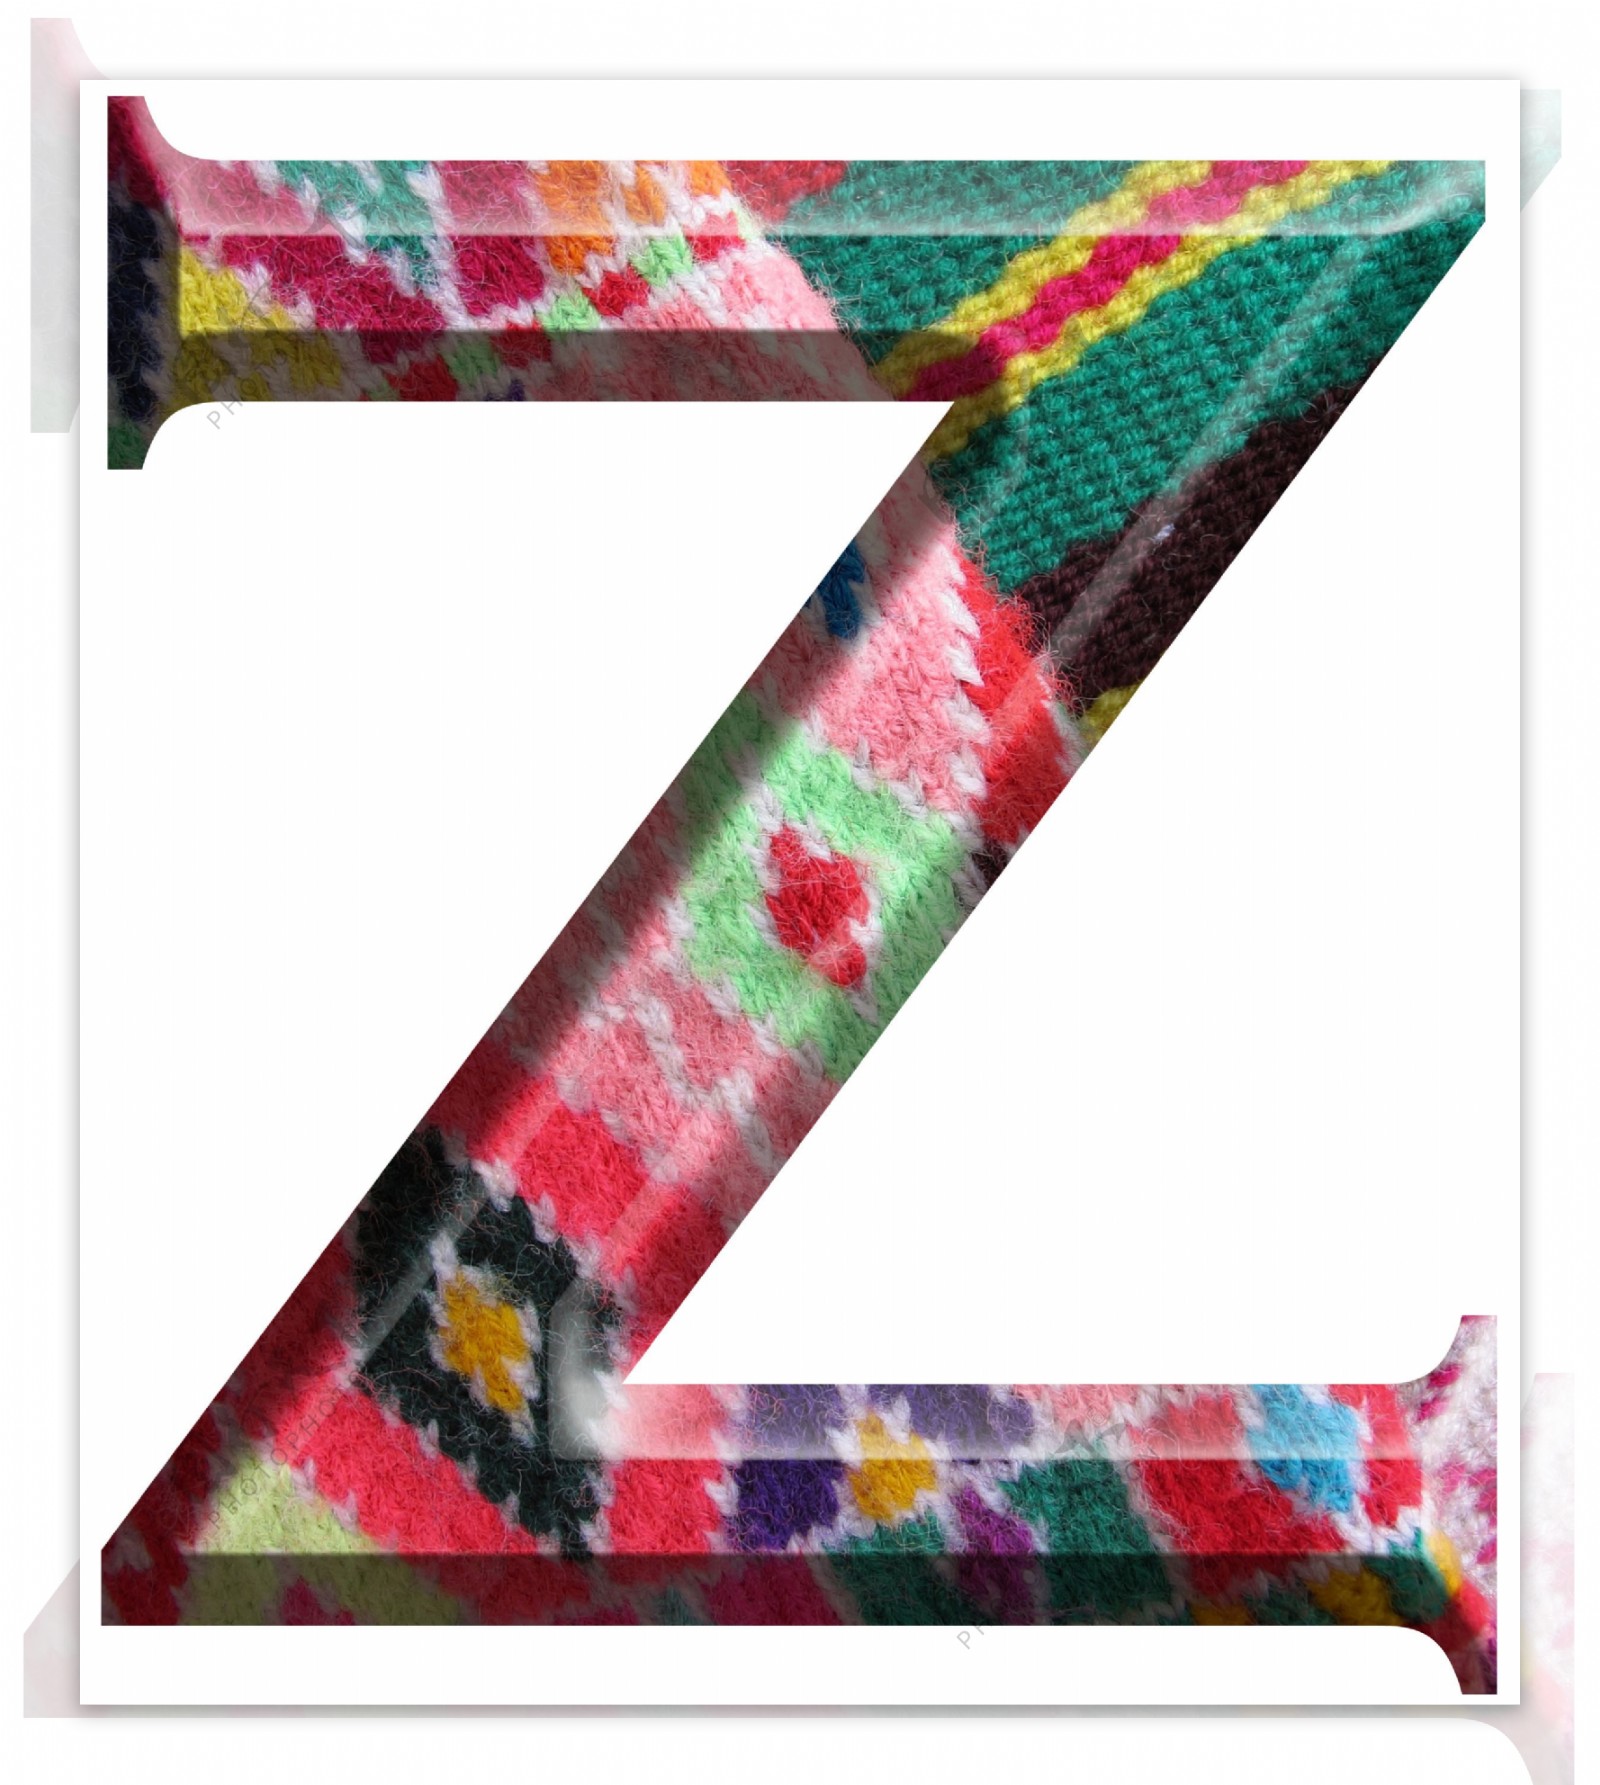 字母Z手工制作的羊毛织物